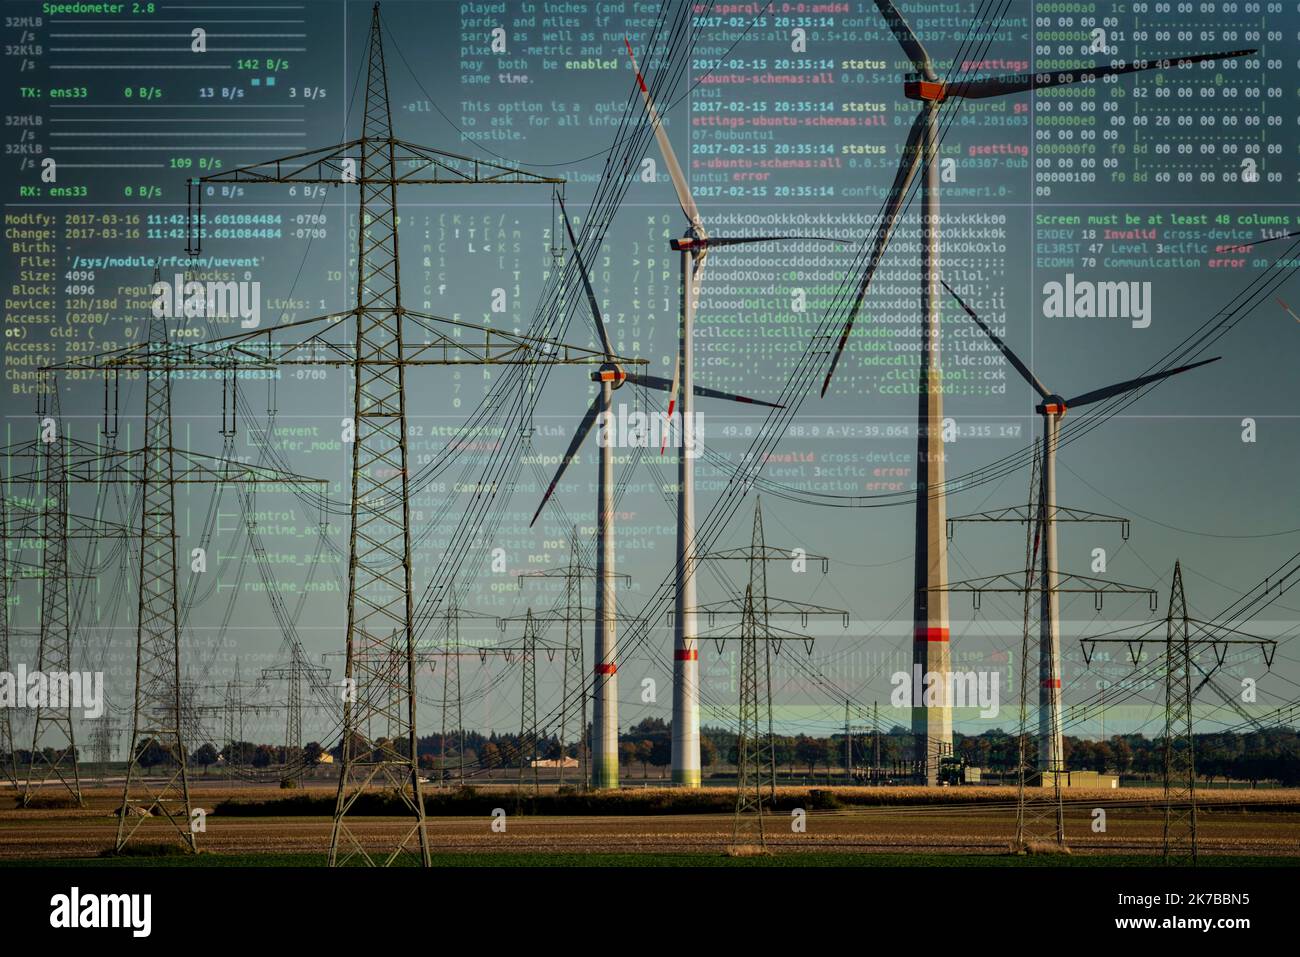 Symbolbild kritische Infrastruktur, Blackout-Gefahr, Cyberterrorismus, Windpark bei Bad Wünnenberg, Ostwestfälisches Lippe, entlang der Autobahn A44, Stockfoto